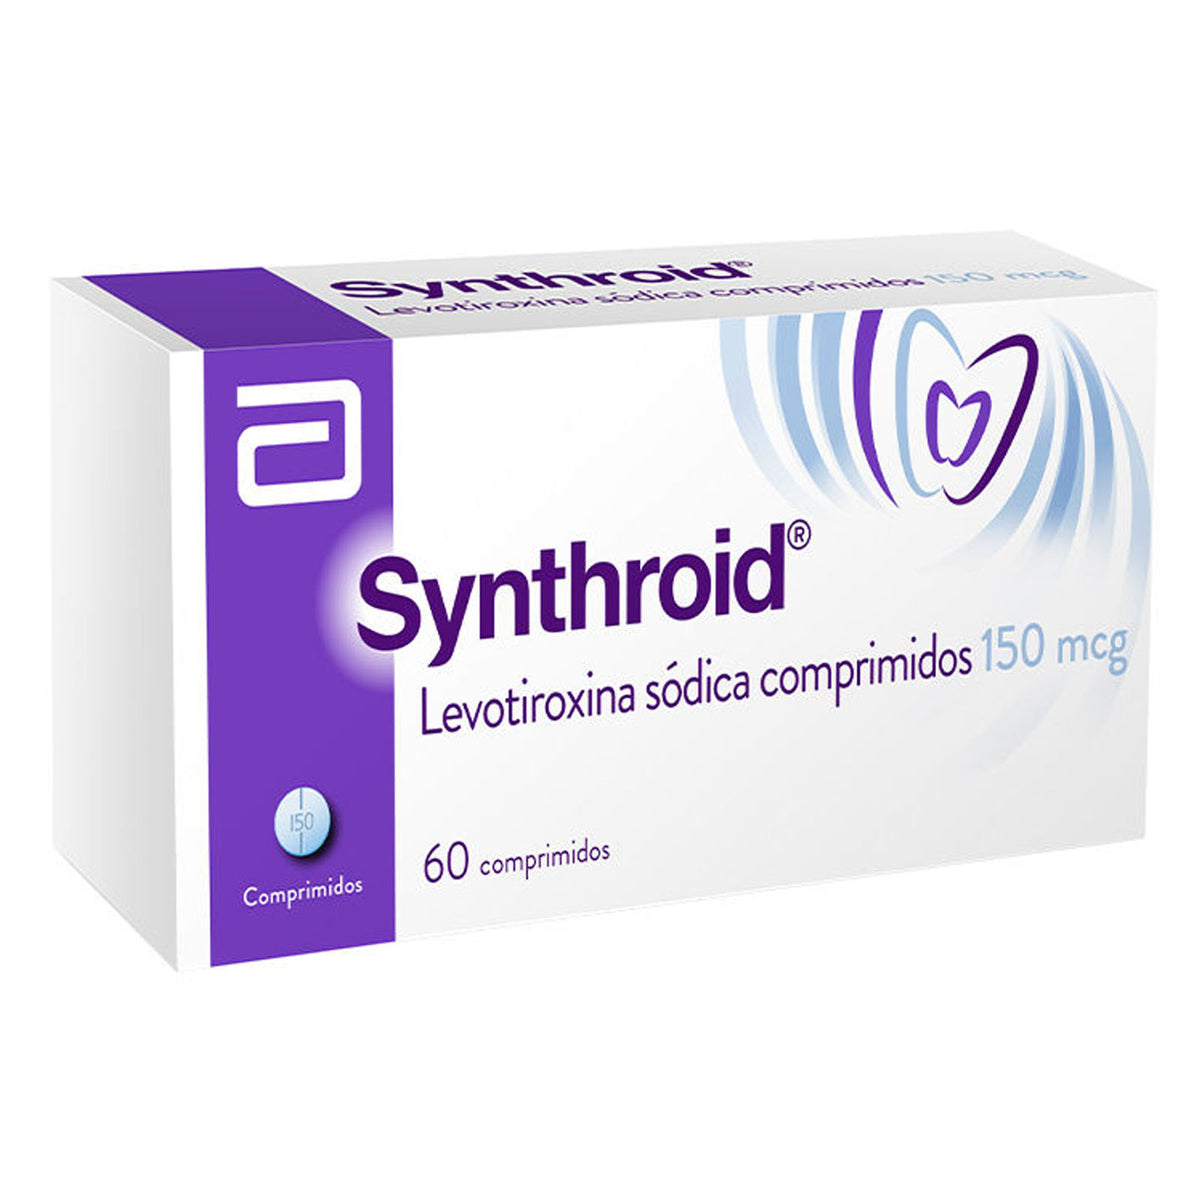 Synthroid Comprimidos 150mcg